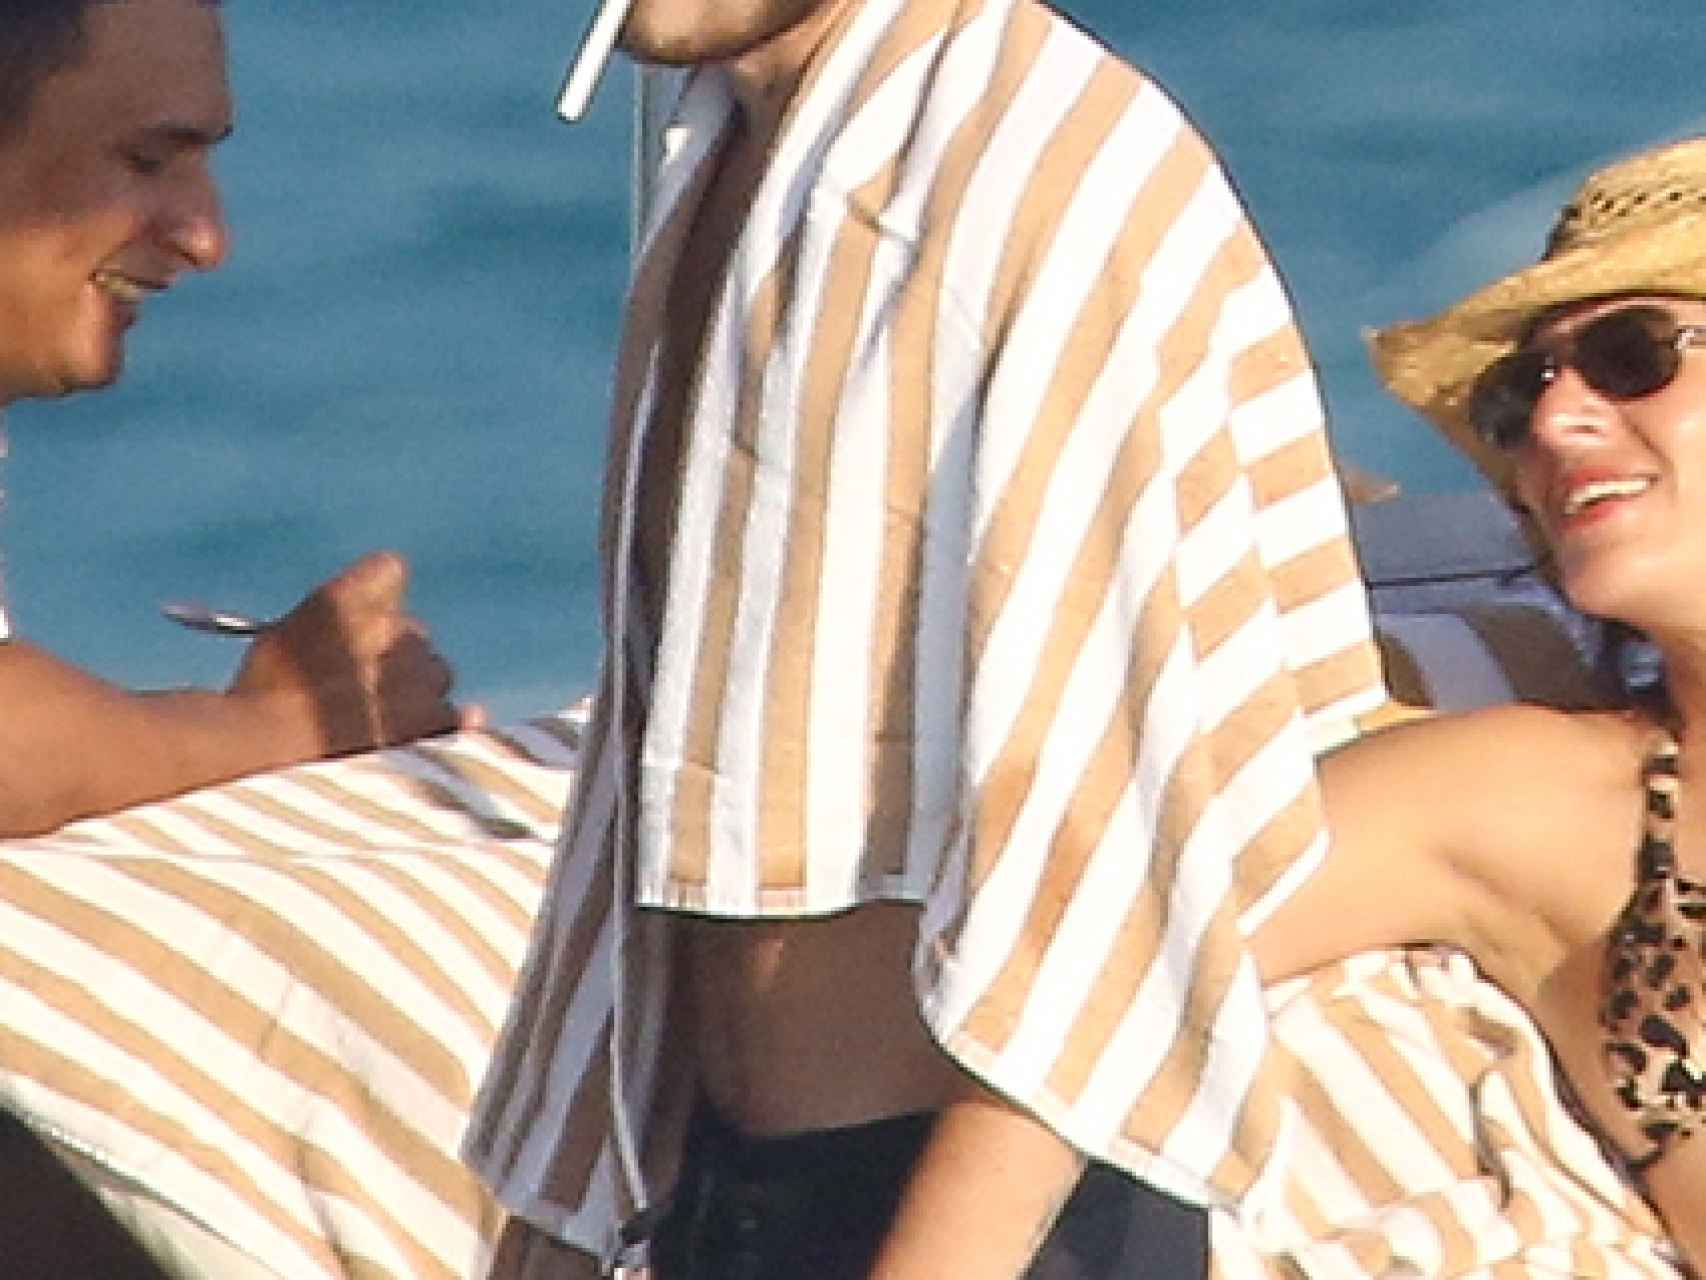 Liam con un cigarro en los labios.